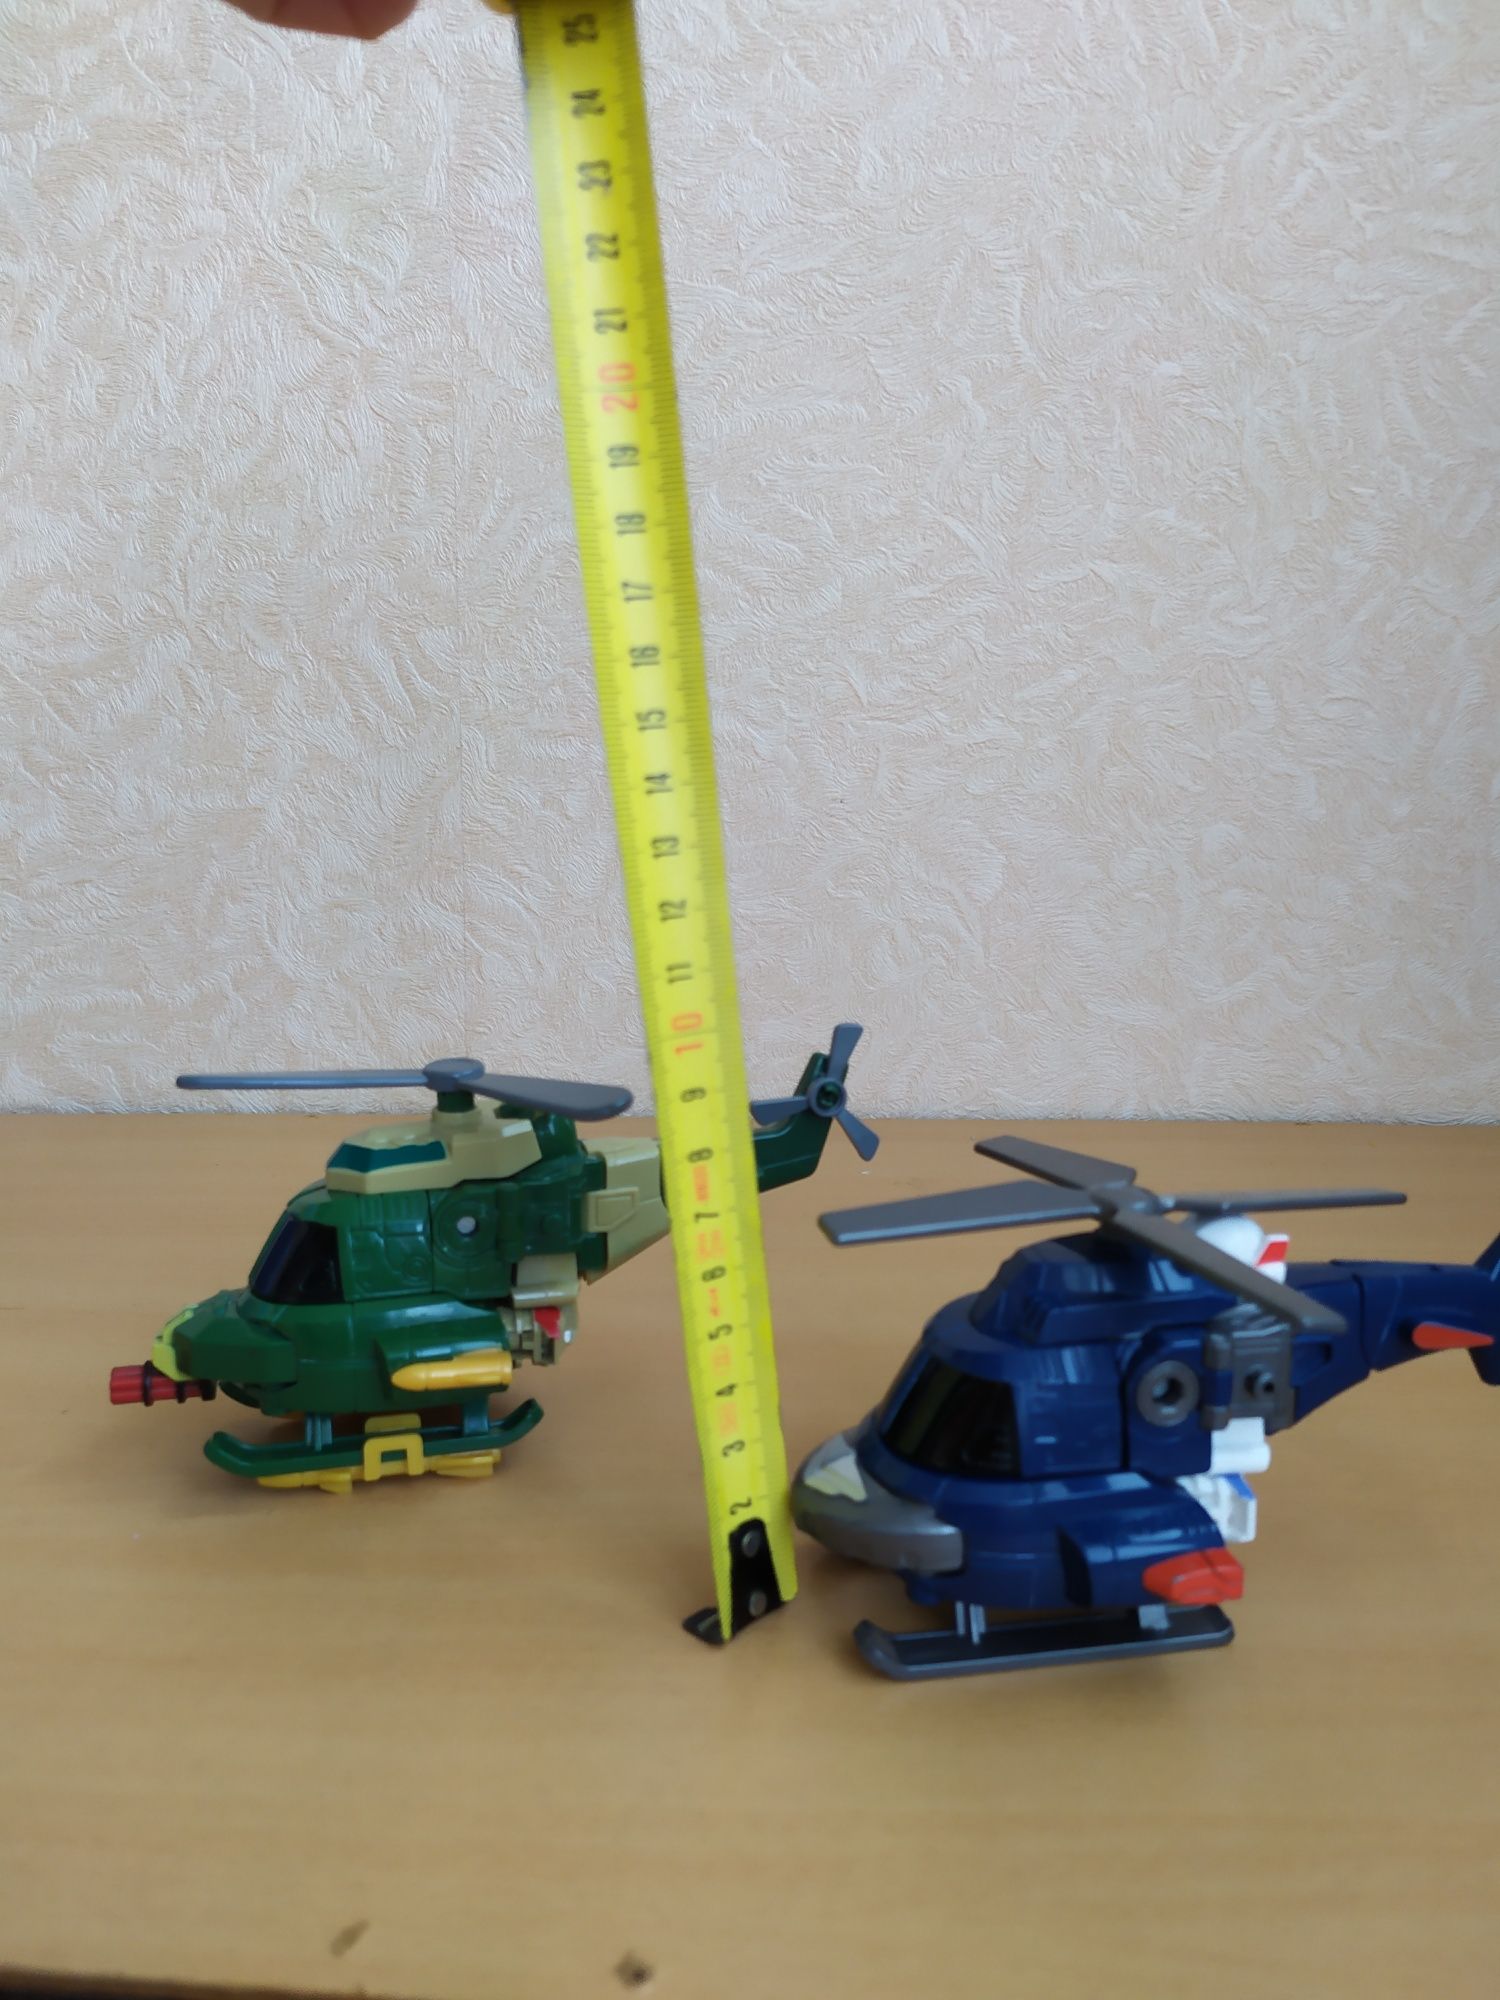 Вертолеты трансформеры набор